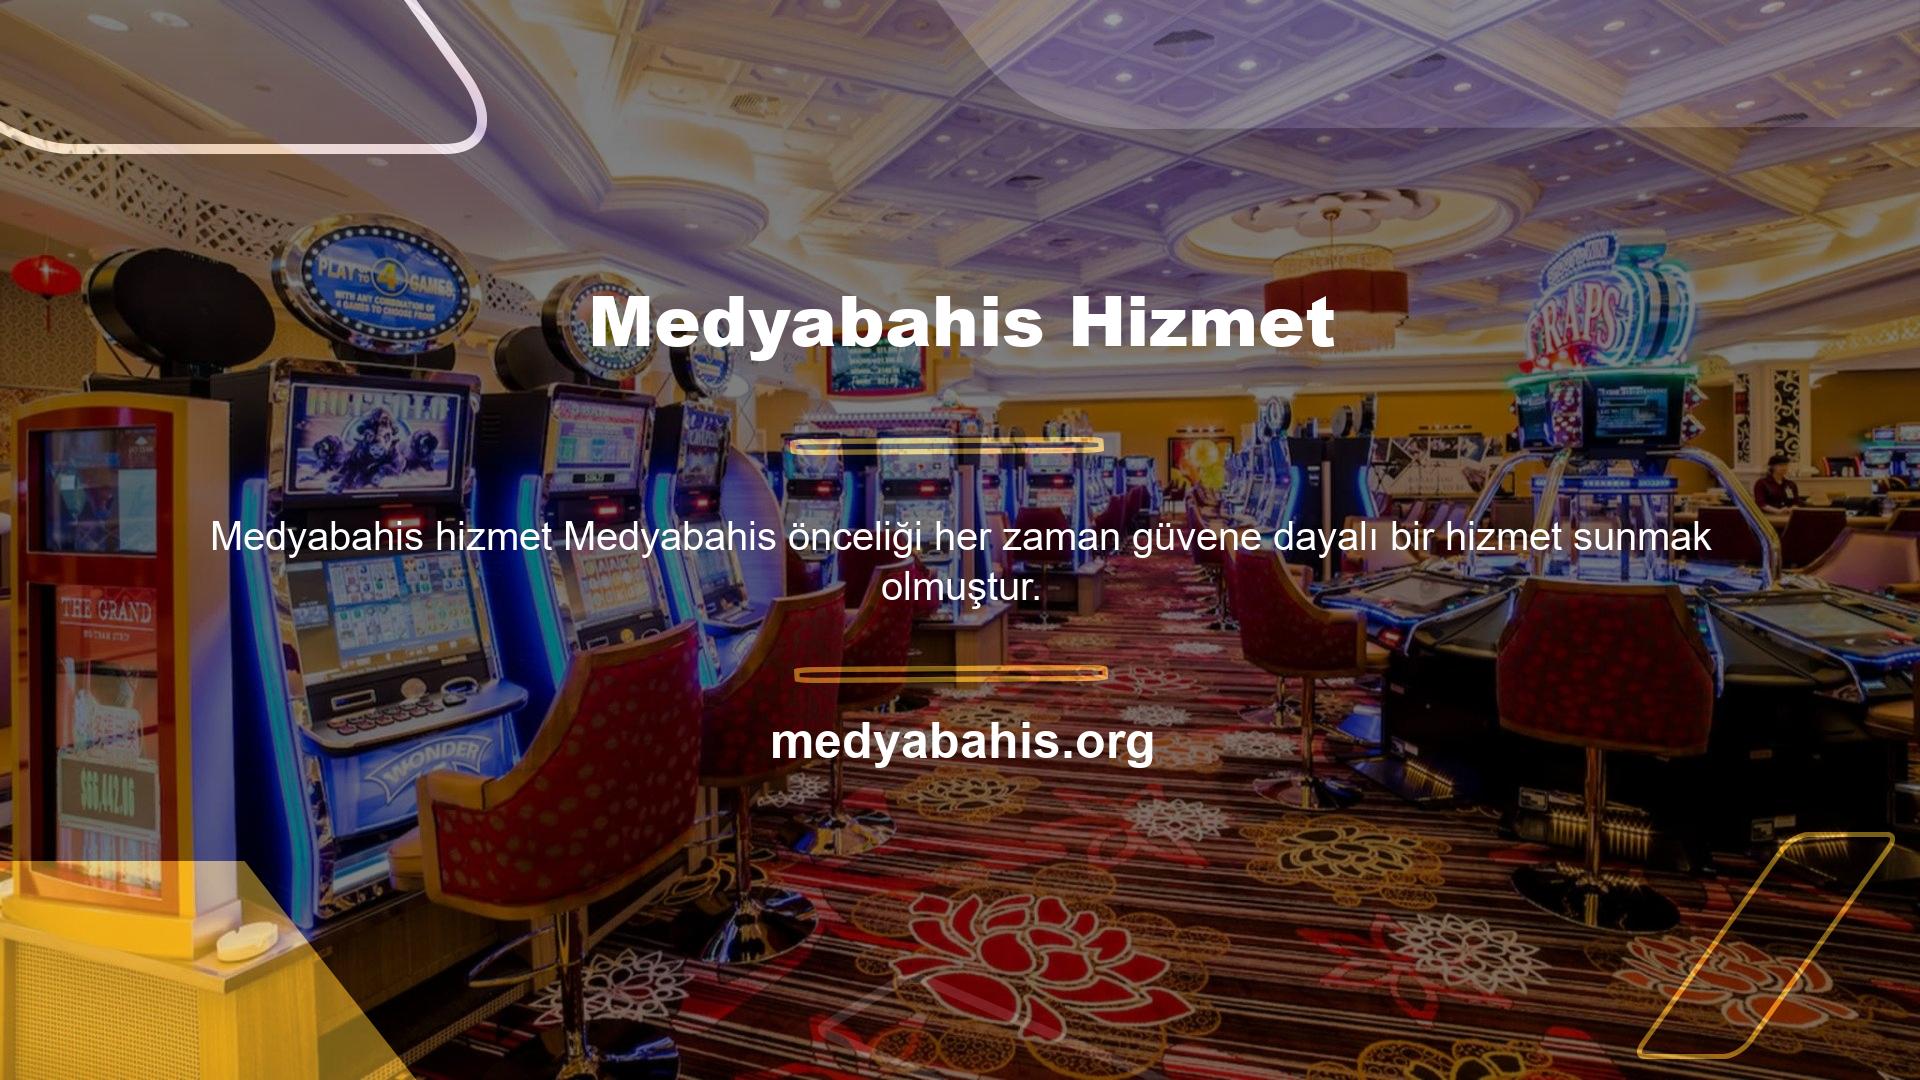 Medyabahis, günümüzün en popüler bahis sitelerinden biridir ve sunduğu casino ve oyun hizmetleri, kullanıcılarından büyük ilgi görmektedir